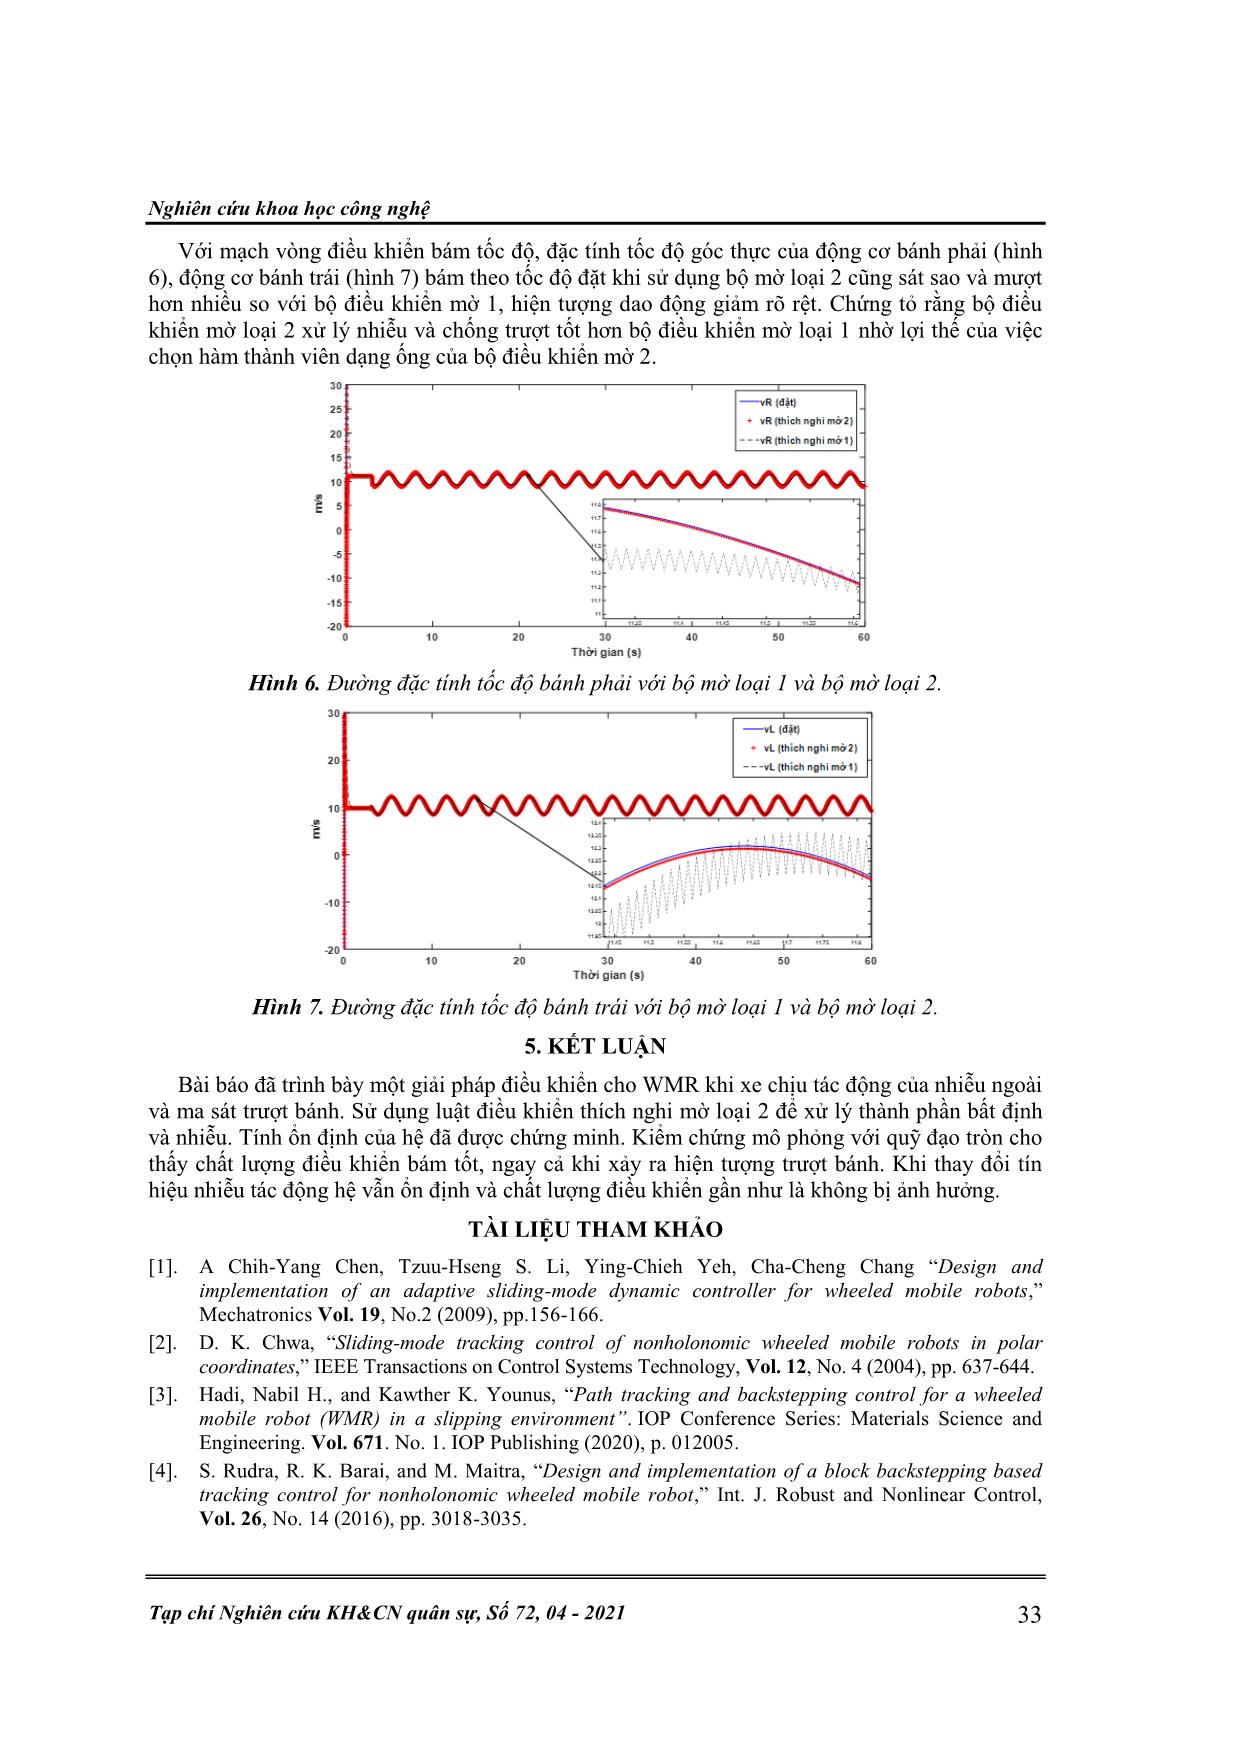 Điều khiển bám quỹ đạo cho xe tự hành sử dụng bộ điều khiển thích nghi mờ loại 2 trang 10